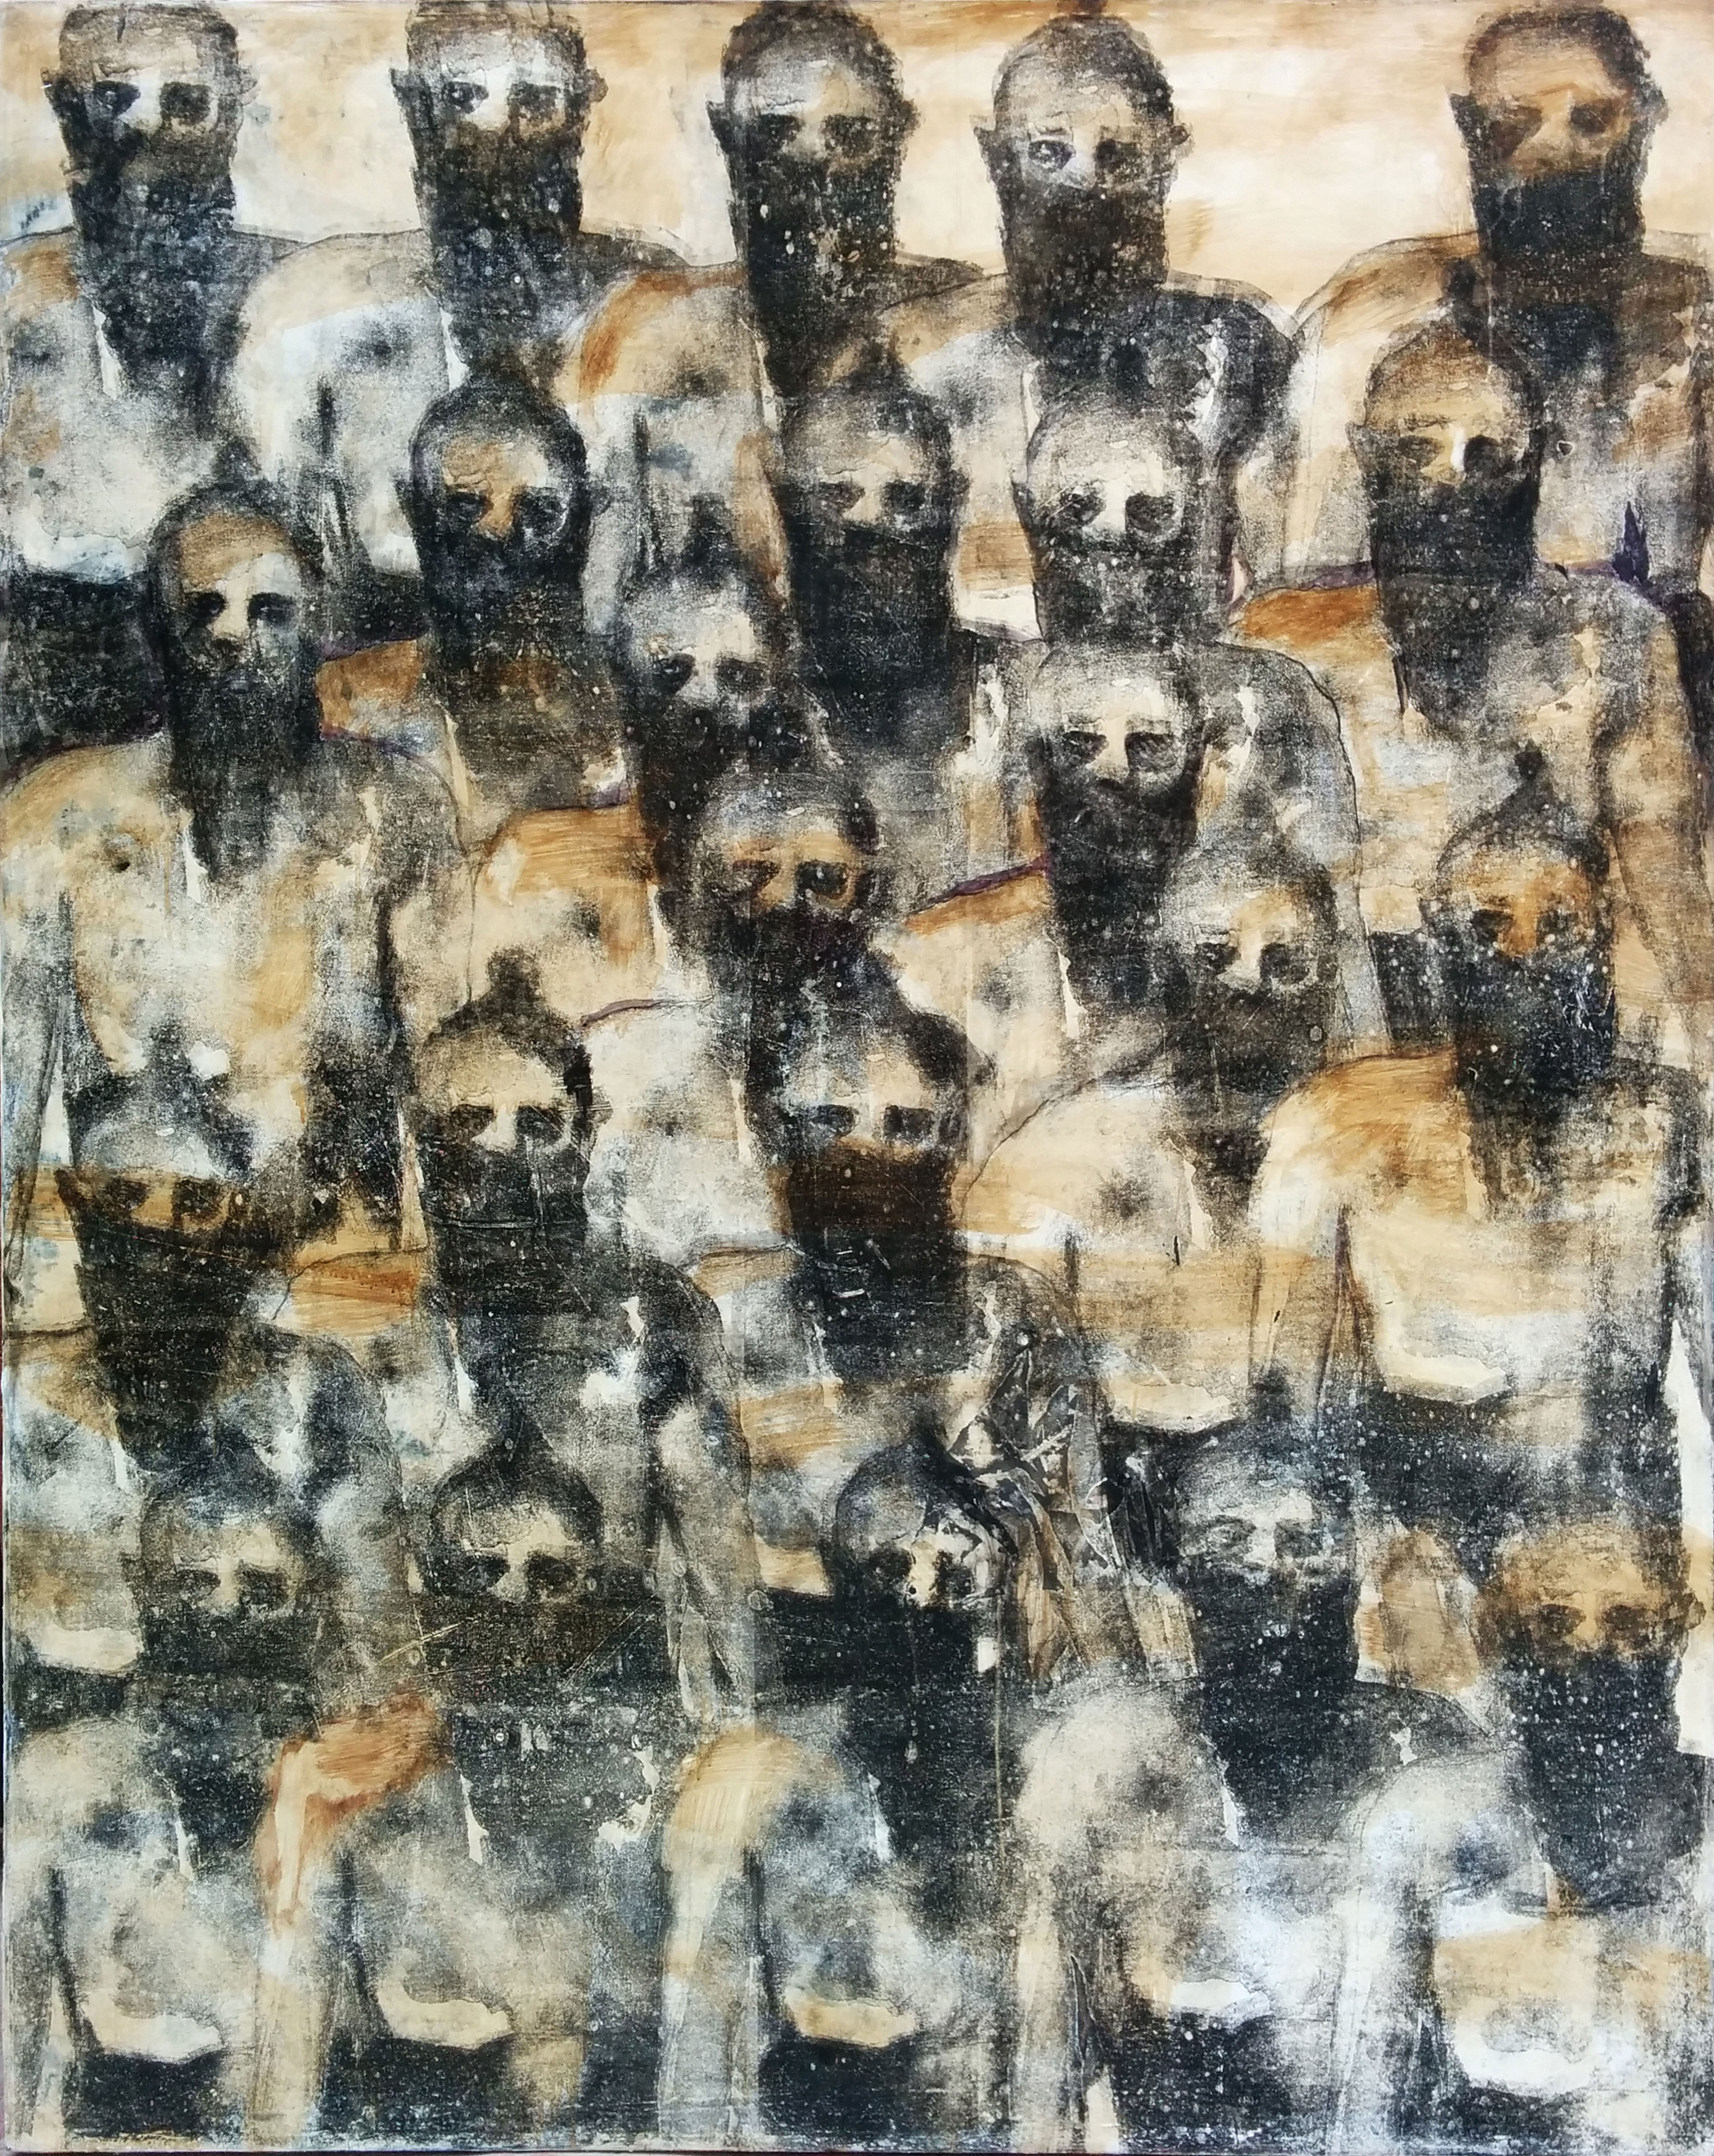 AHMET SARI, Koro, 2015, Tuval üzerine karışık teknik- Mixed media on canvas, 200x160 cm